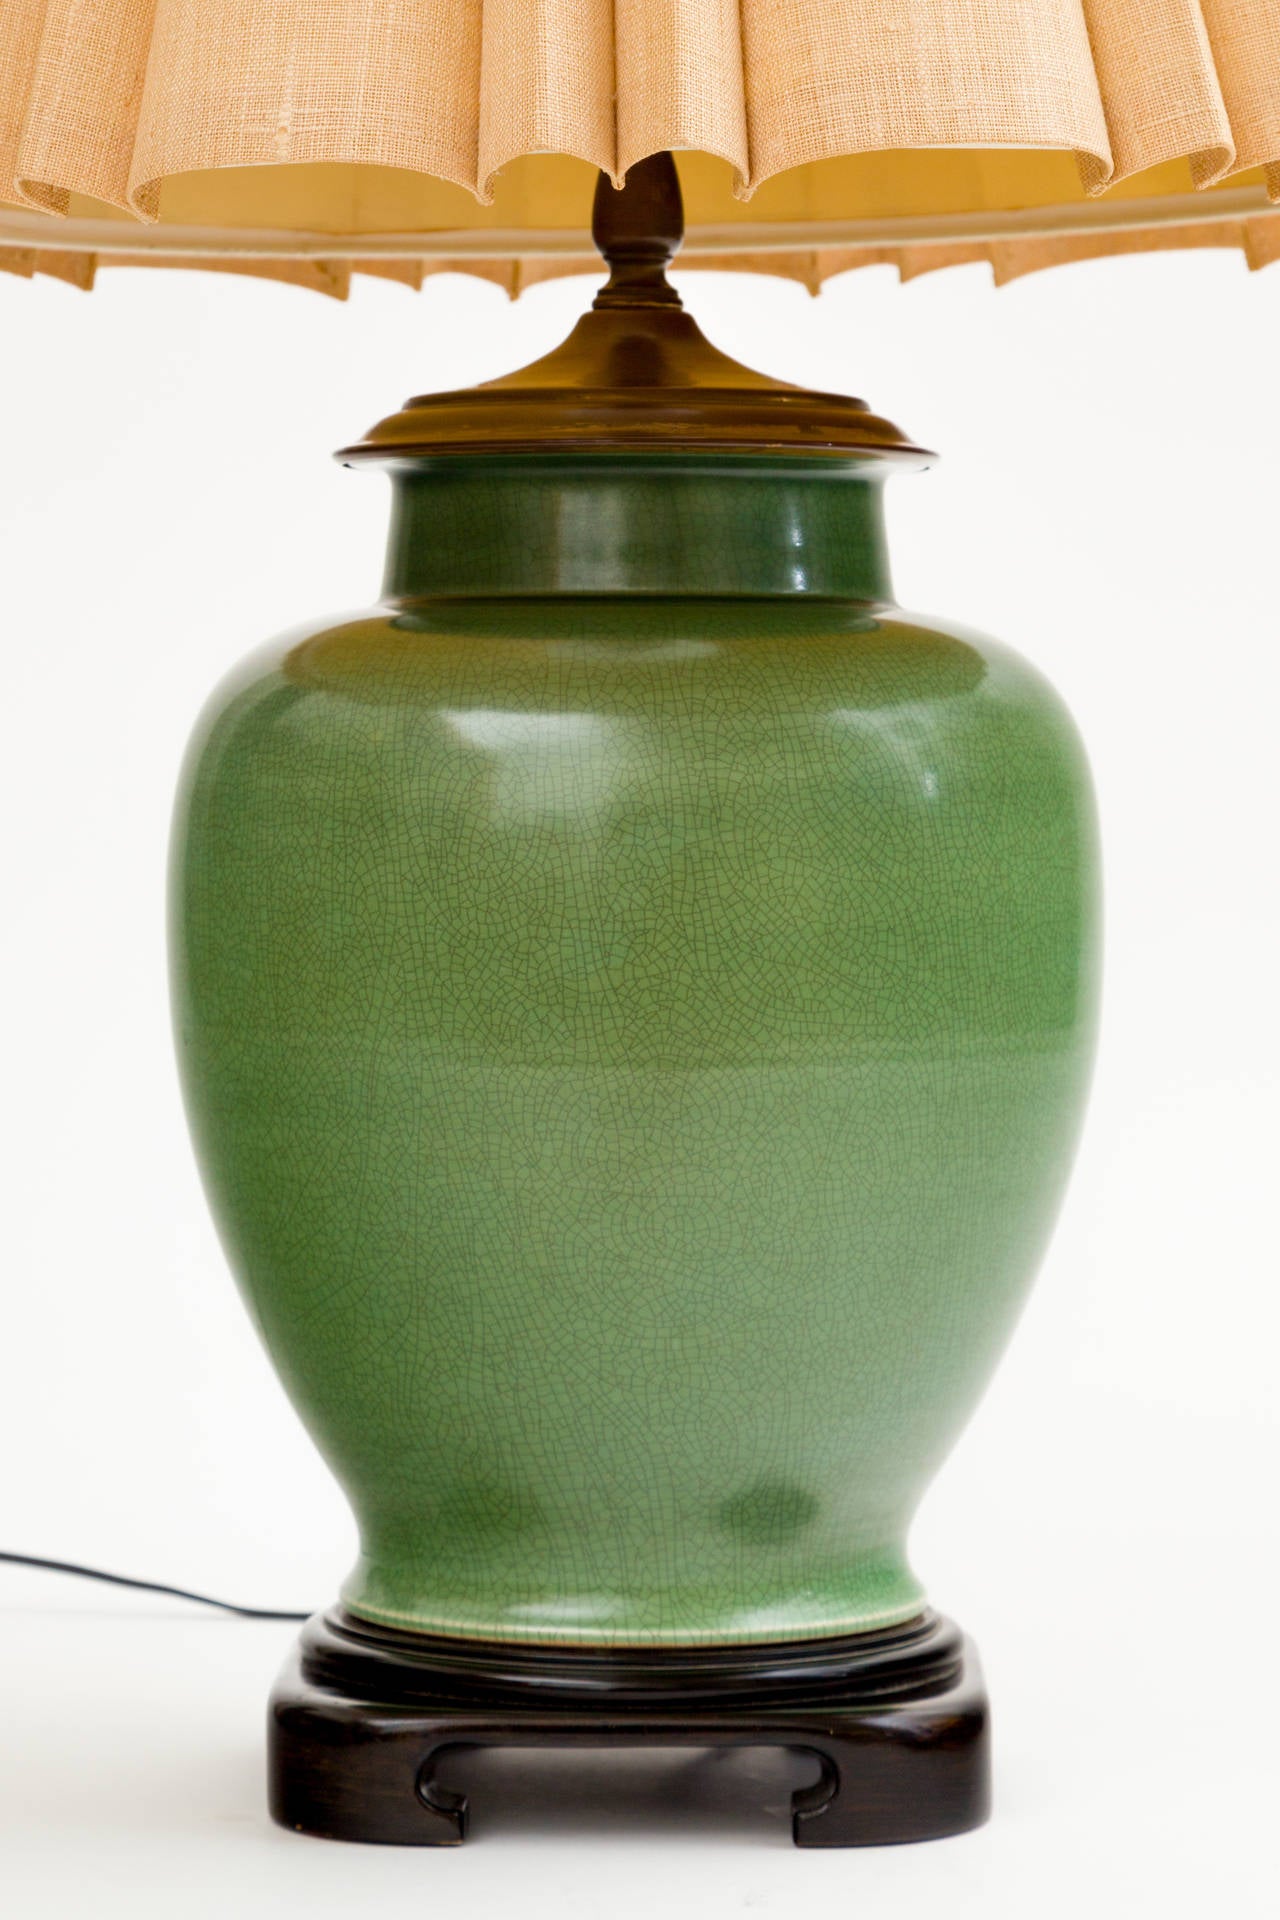 Jade ceramic ginger jar lamp on ebonized wood base. 
Solid brass Chinese 